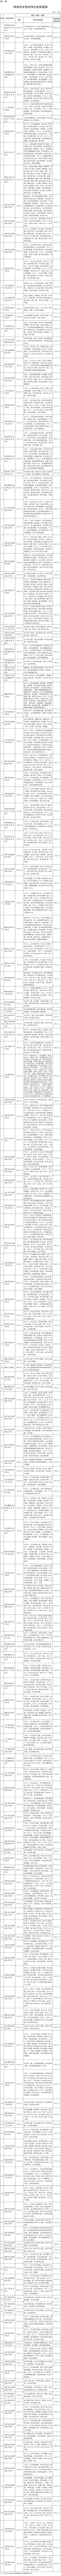 河南省人民政府办公厅关于公布河南省开发区四至边界范围的通知